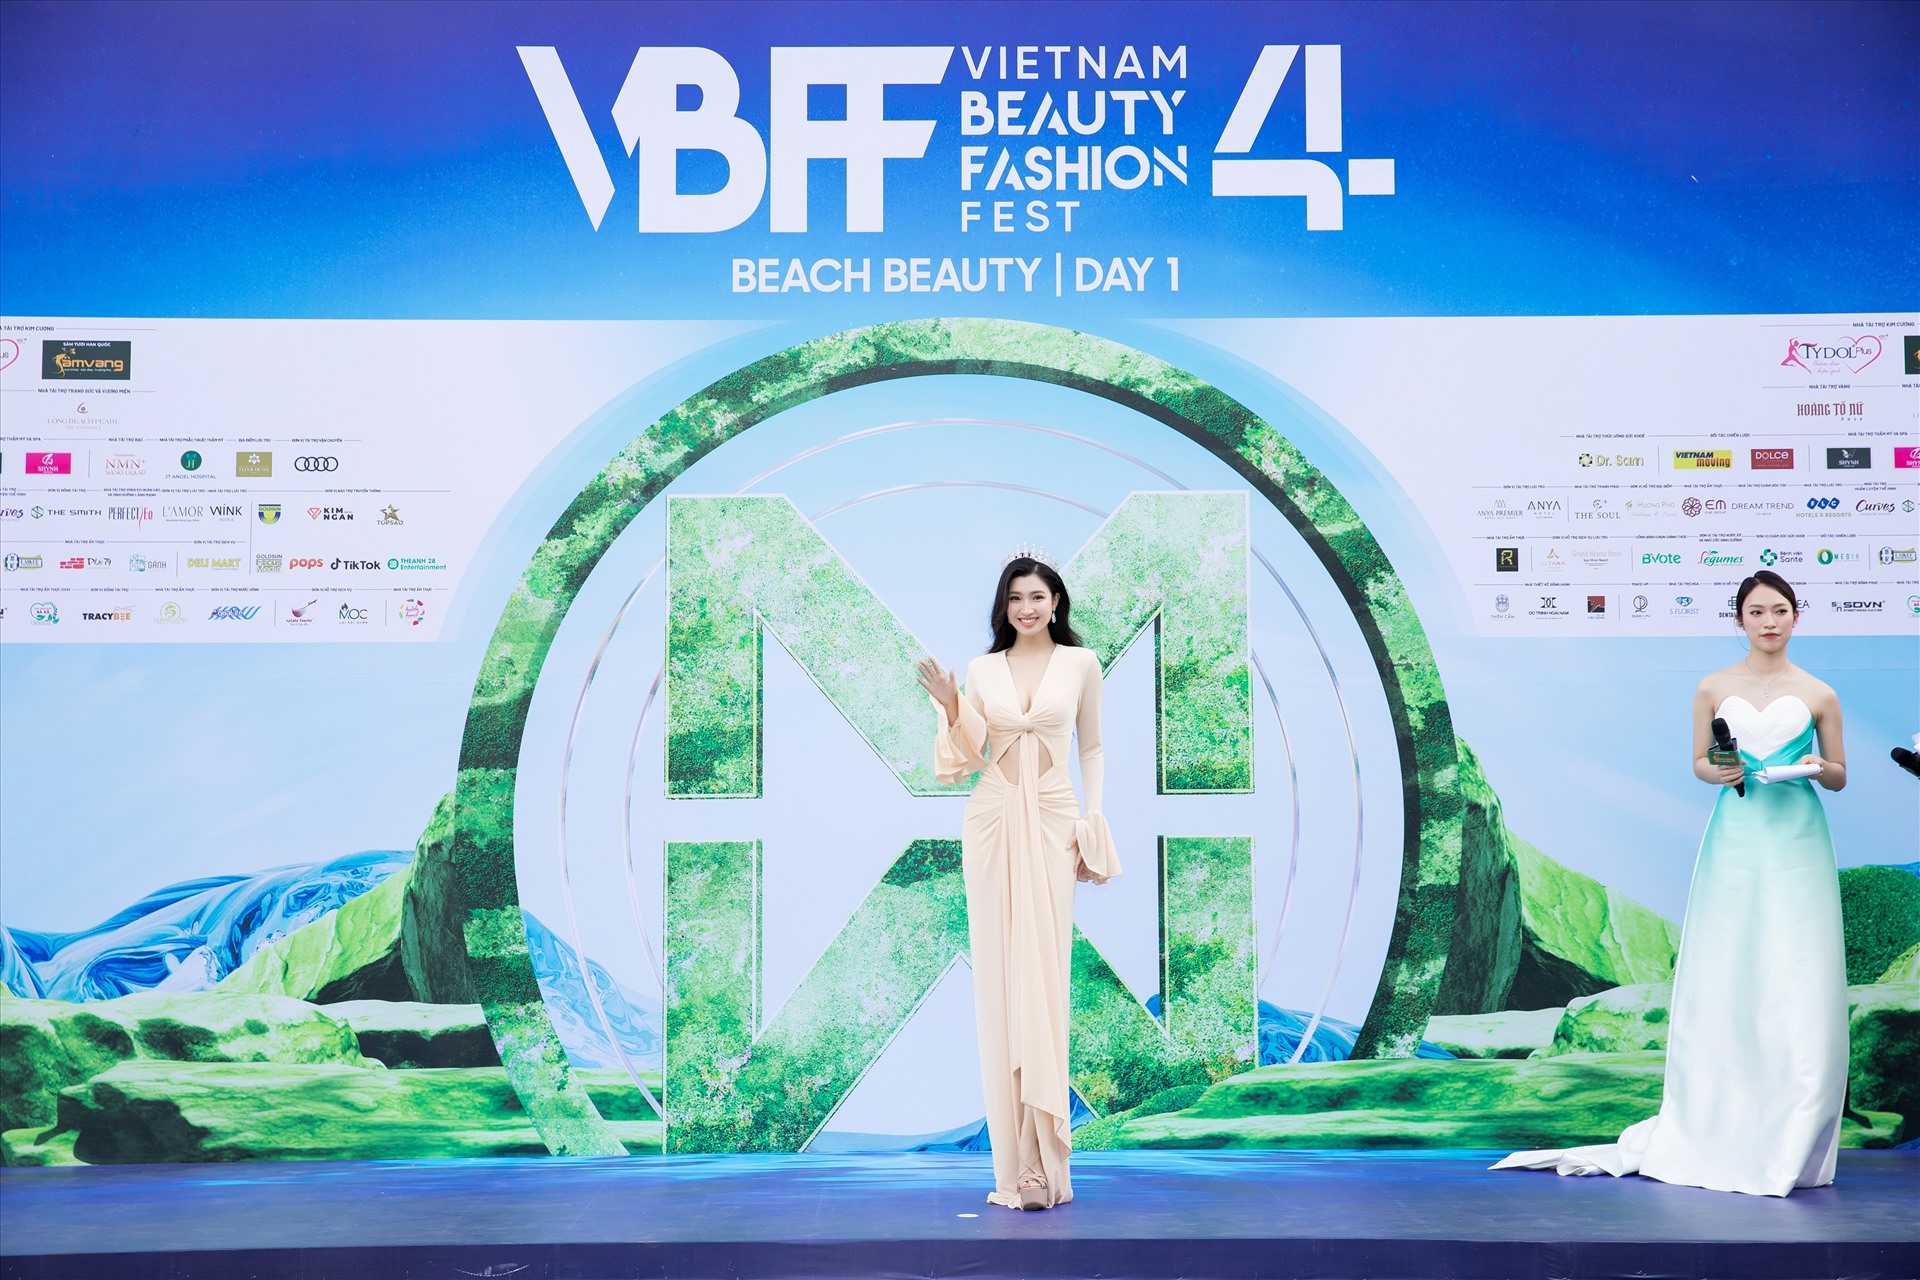 Á hậu Phương Nhi - Miss International Vietnam 2023 xuất hiện tại thảm đỏ Vietnam Beauty Fashion Fest với chiếc váy ôm sát, khoe trọn body ấn tượng.  Đặc biệt, mái tóc xoăn quyến rũ càng tôn lên nét trưởng thành sau gần 1 năm đăng quang của cô. 